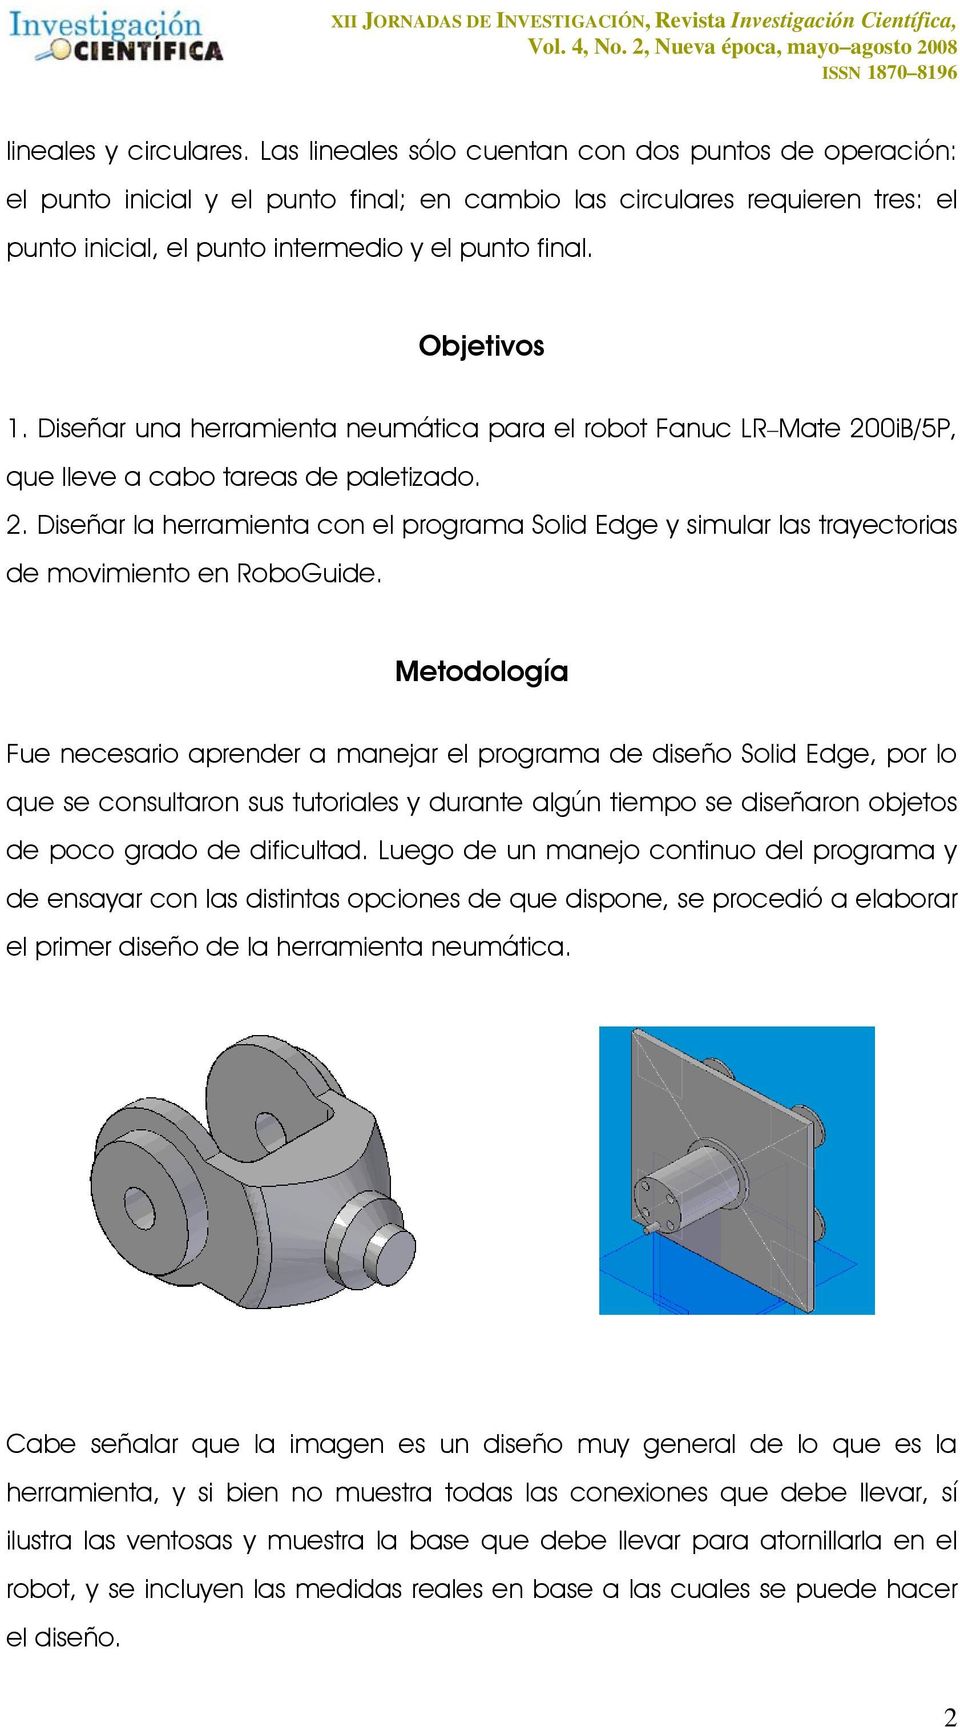 Diseñar una herramienta neumática para el robot Fanuc LR Mate 200iB/5P, que lleve a cabo tareas de paletizado. 2. Diseñar la herramienta con el programa Solid Edge y simular las trayectorias de movimiento en RoboGuide.